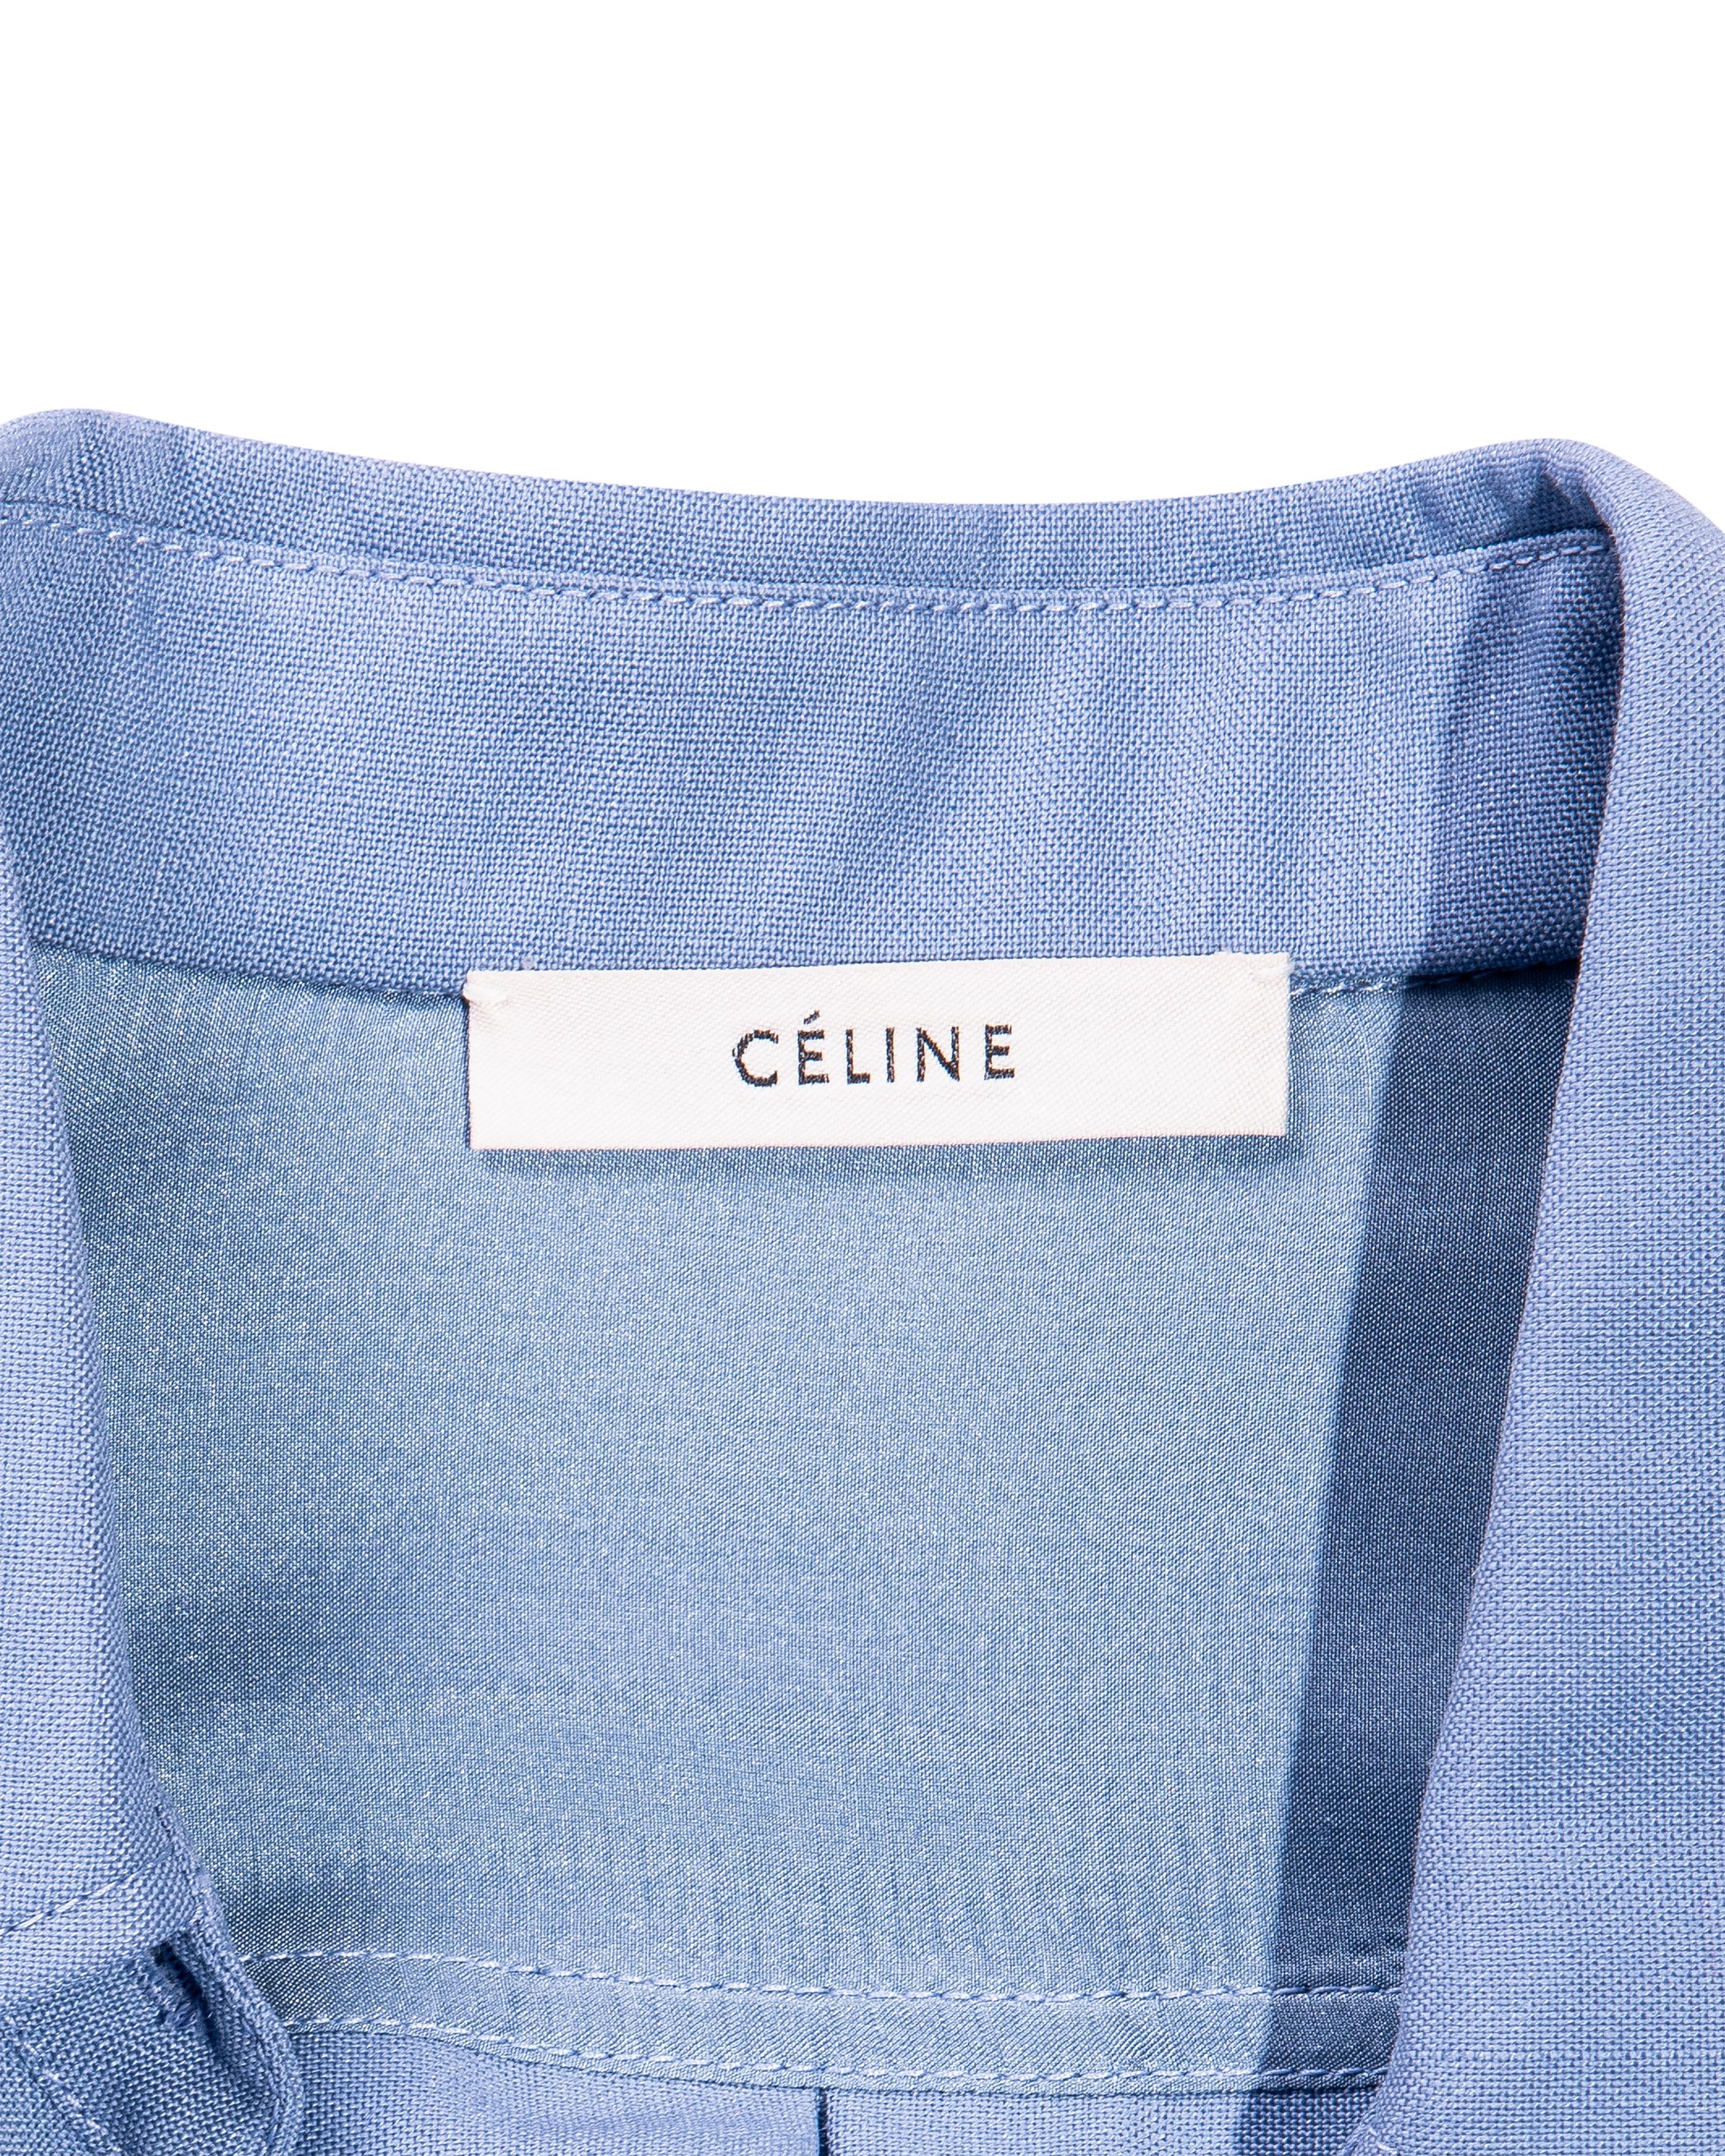 A/W 2017 Céline by Phoebe Philo Button-Up Light Blue Shirt Dress For Sale 8